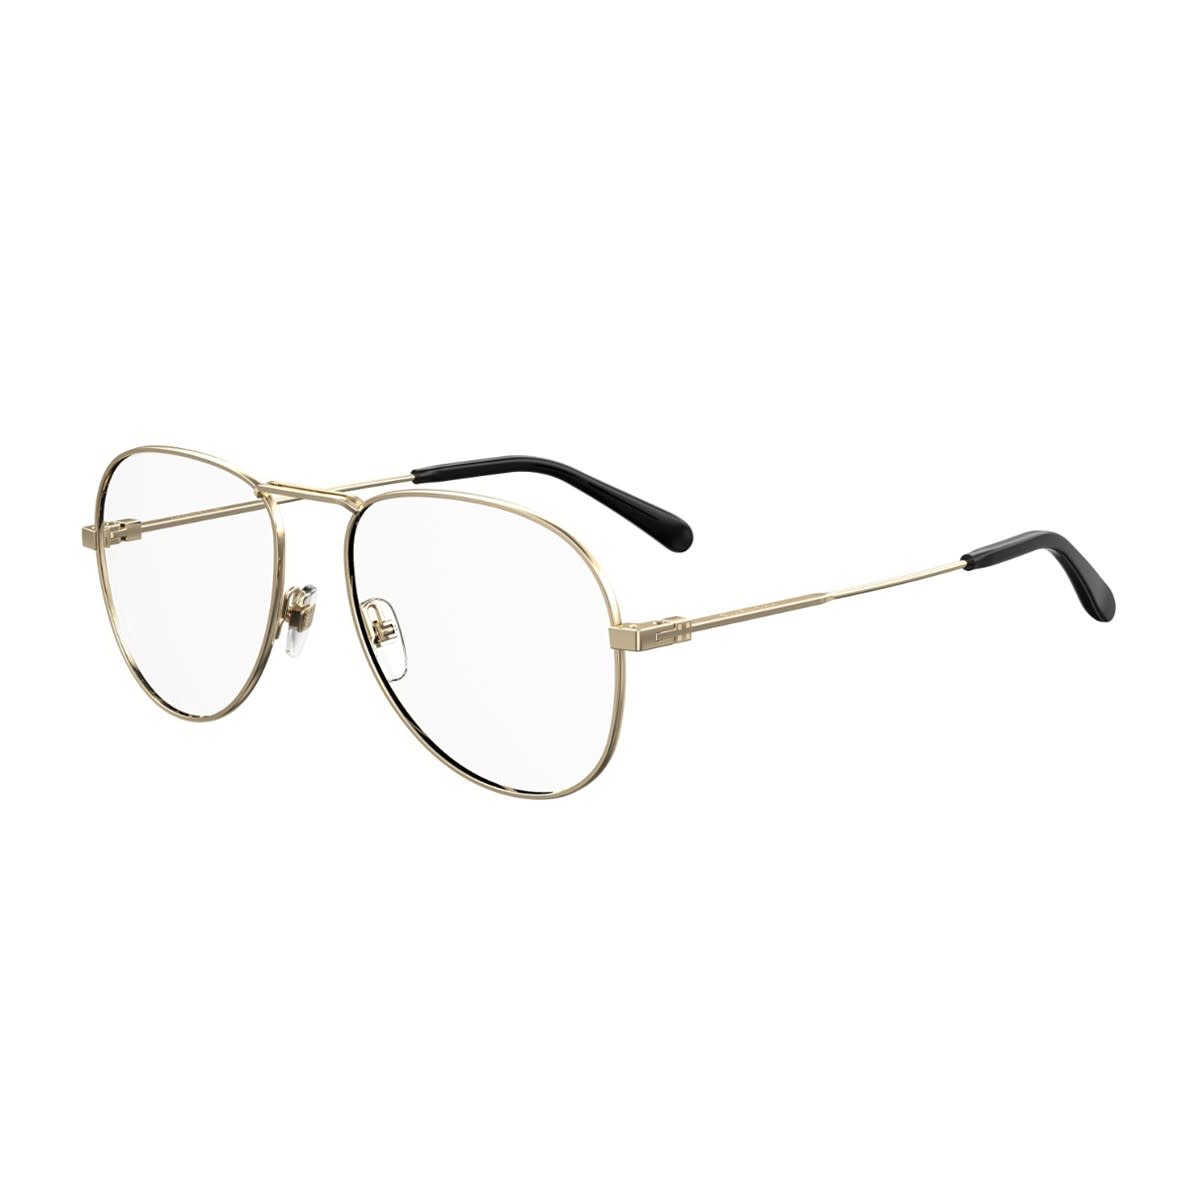 Gv0117 Glasses